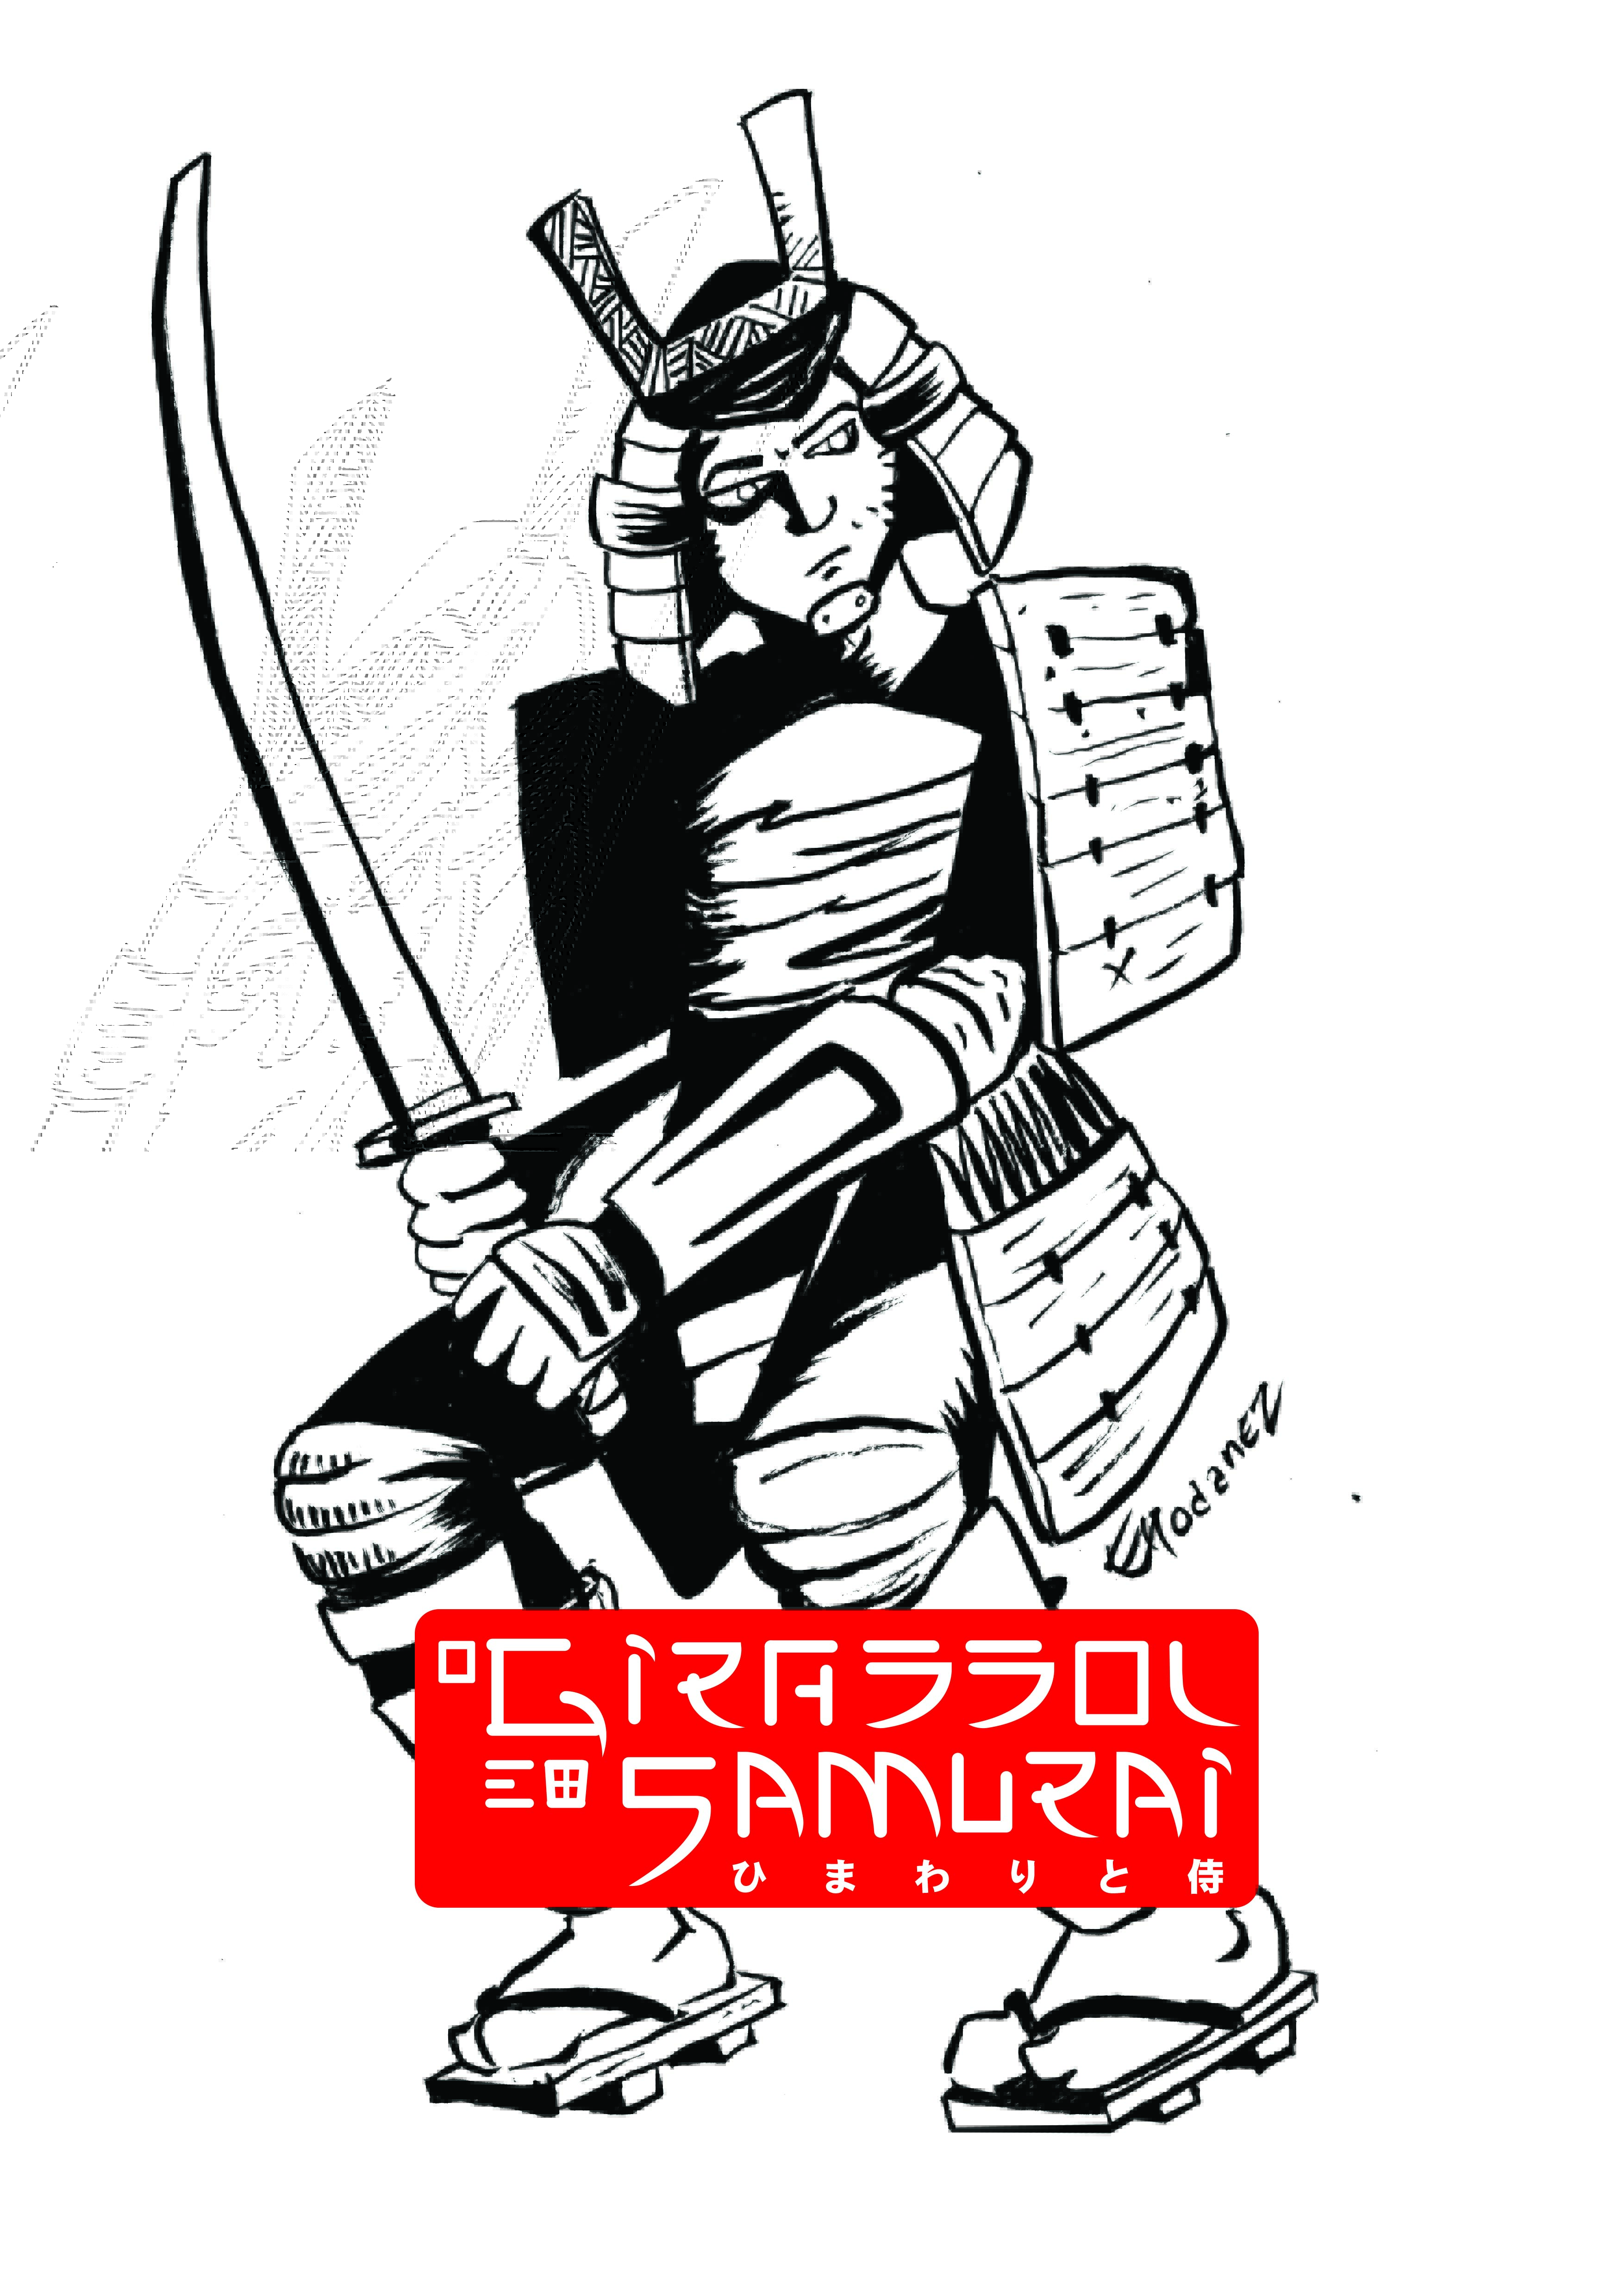 Resenha | O Girassol e o Samurai